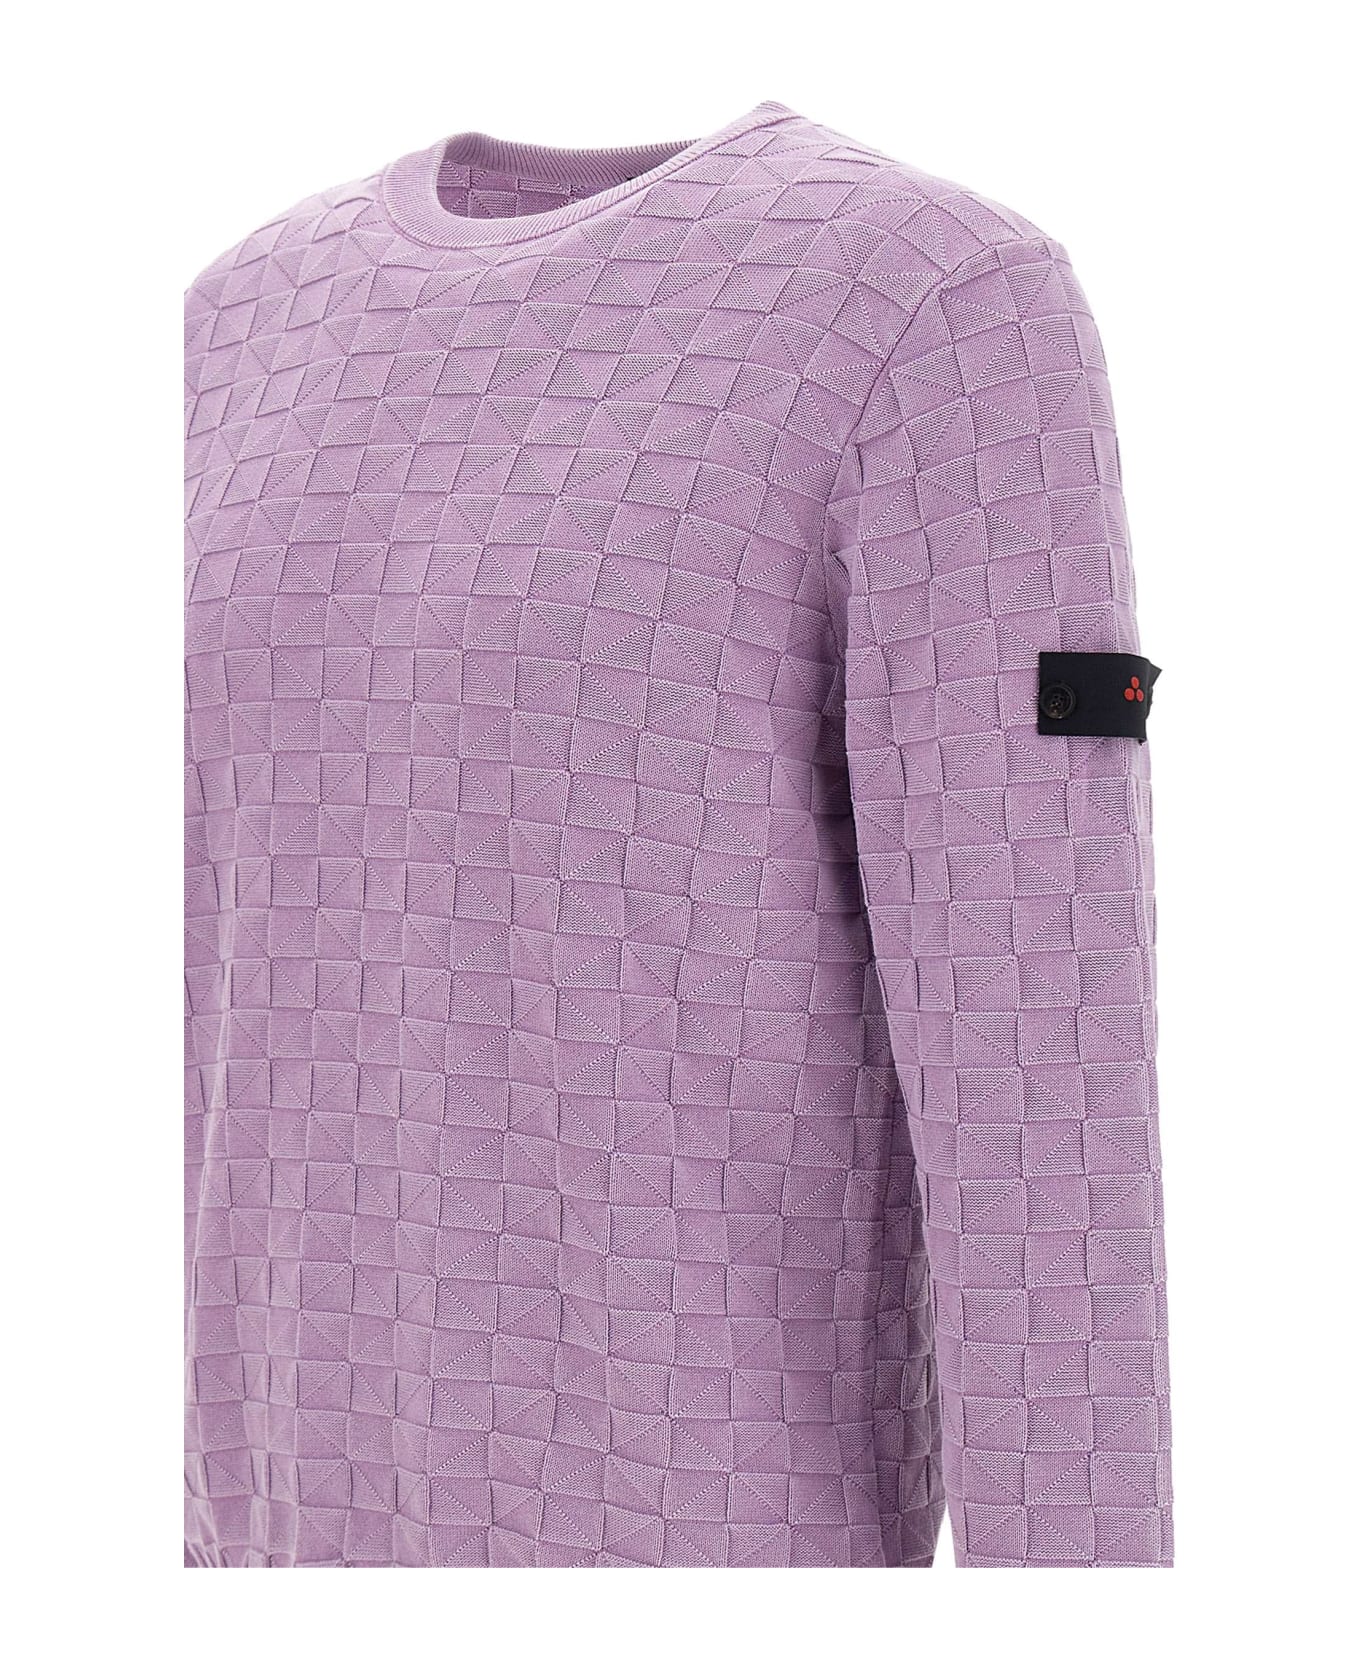 Peuterey "omnium" Cotton Sweater - LILAC